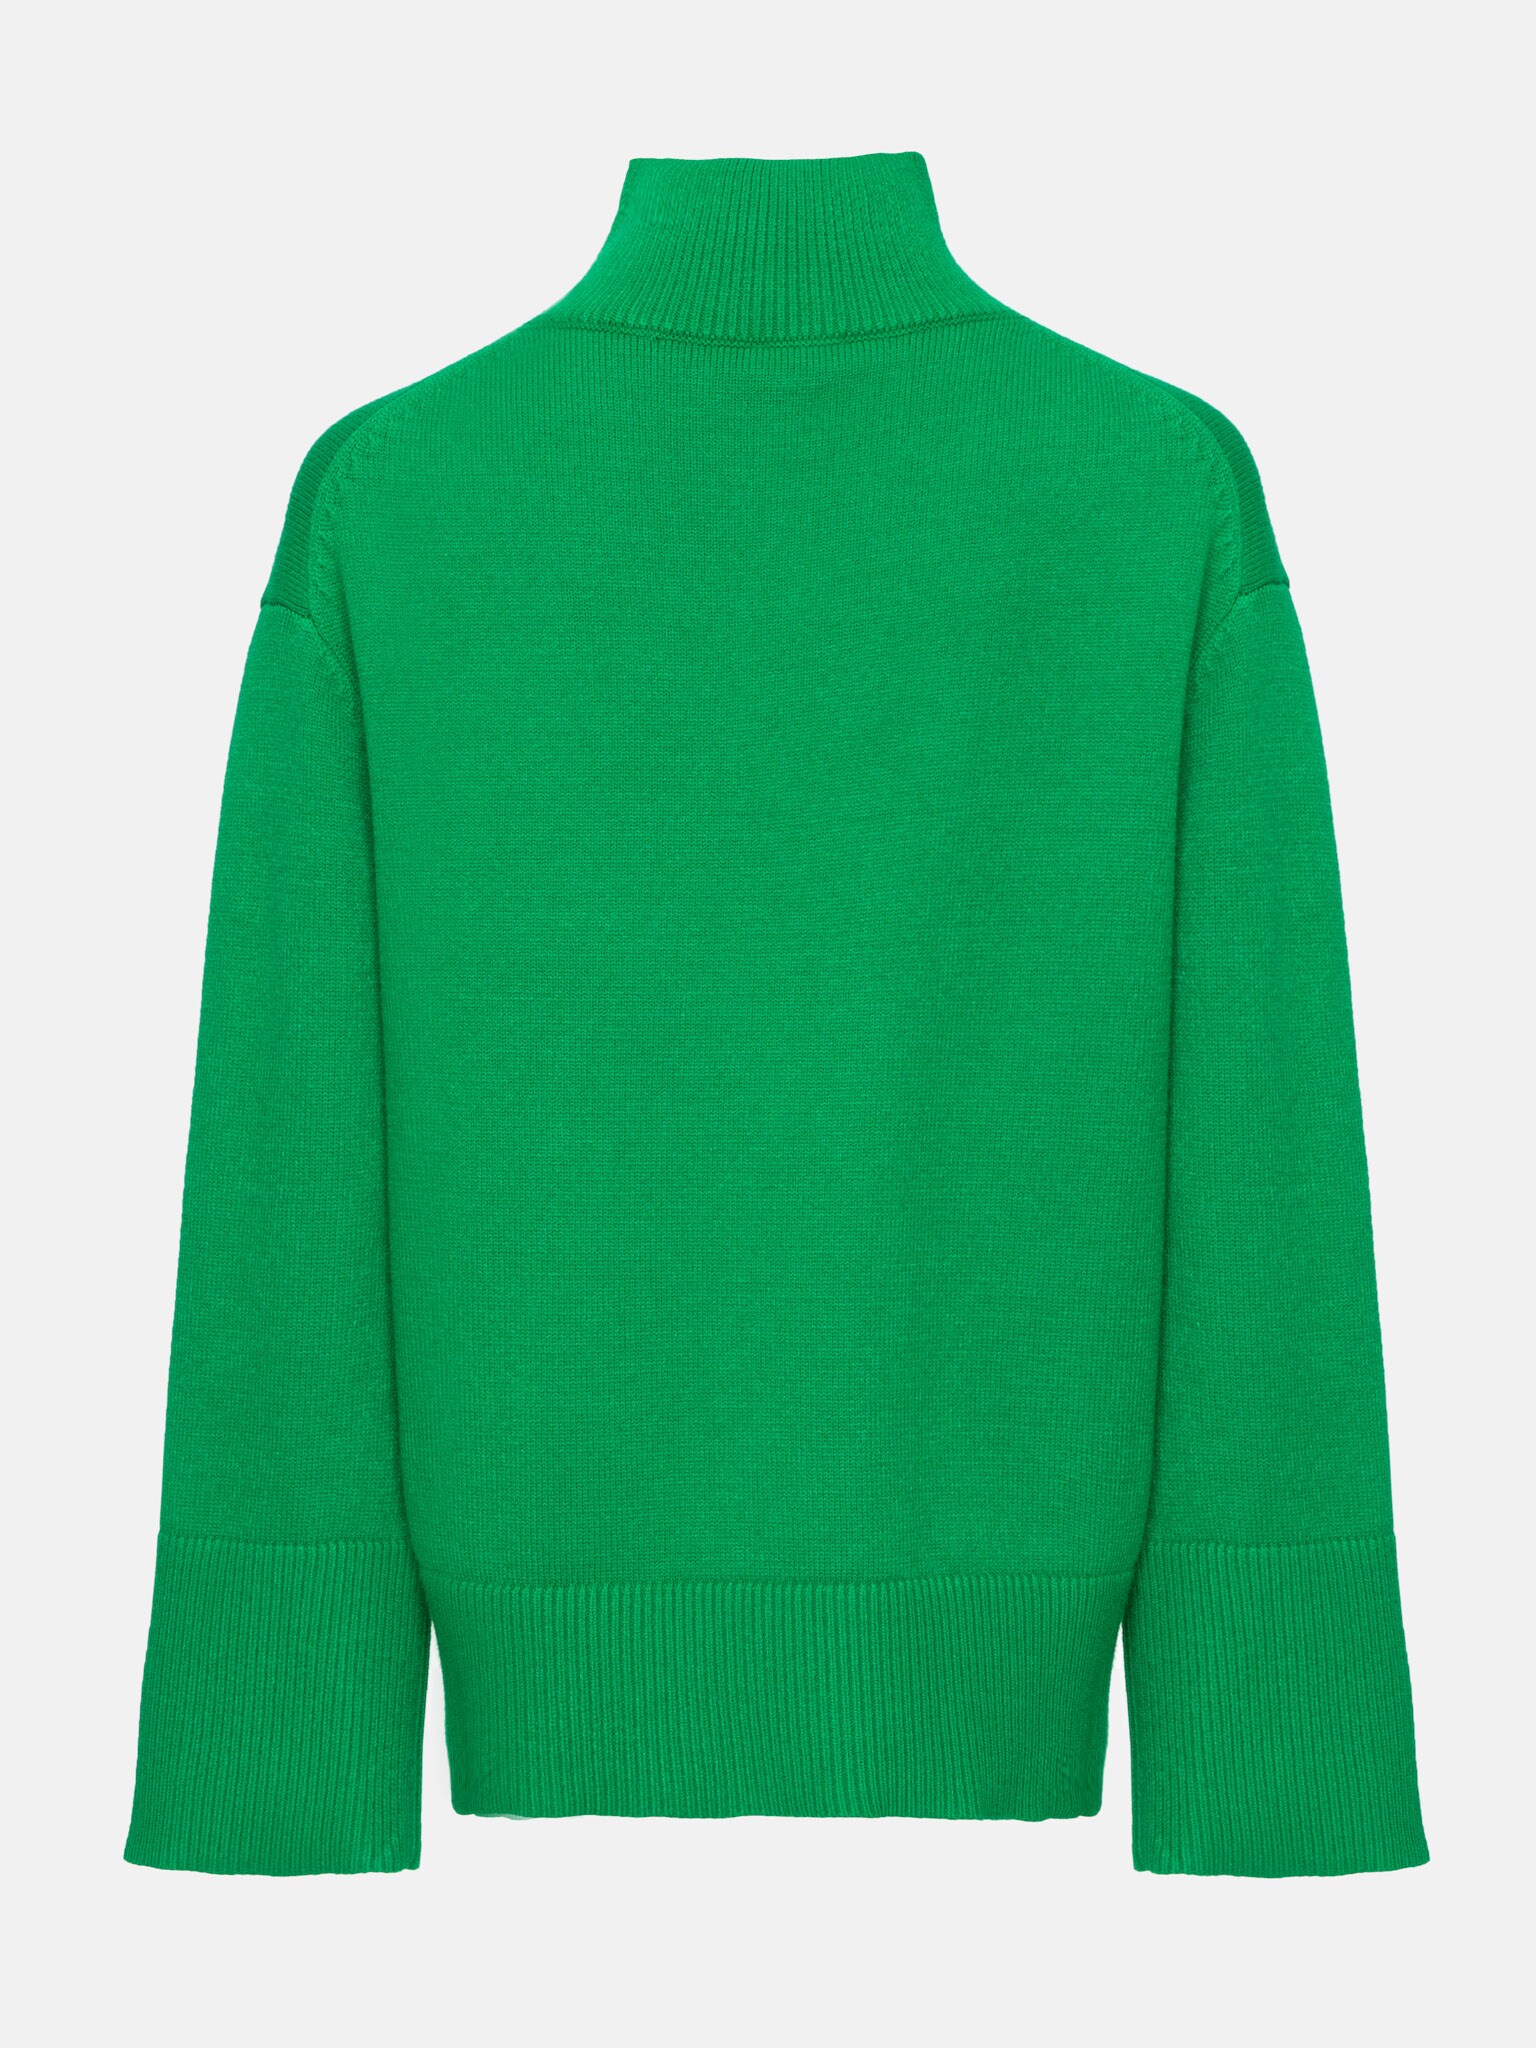 LICHI - Online fashion store :: Oversized jersey sweater